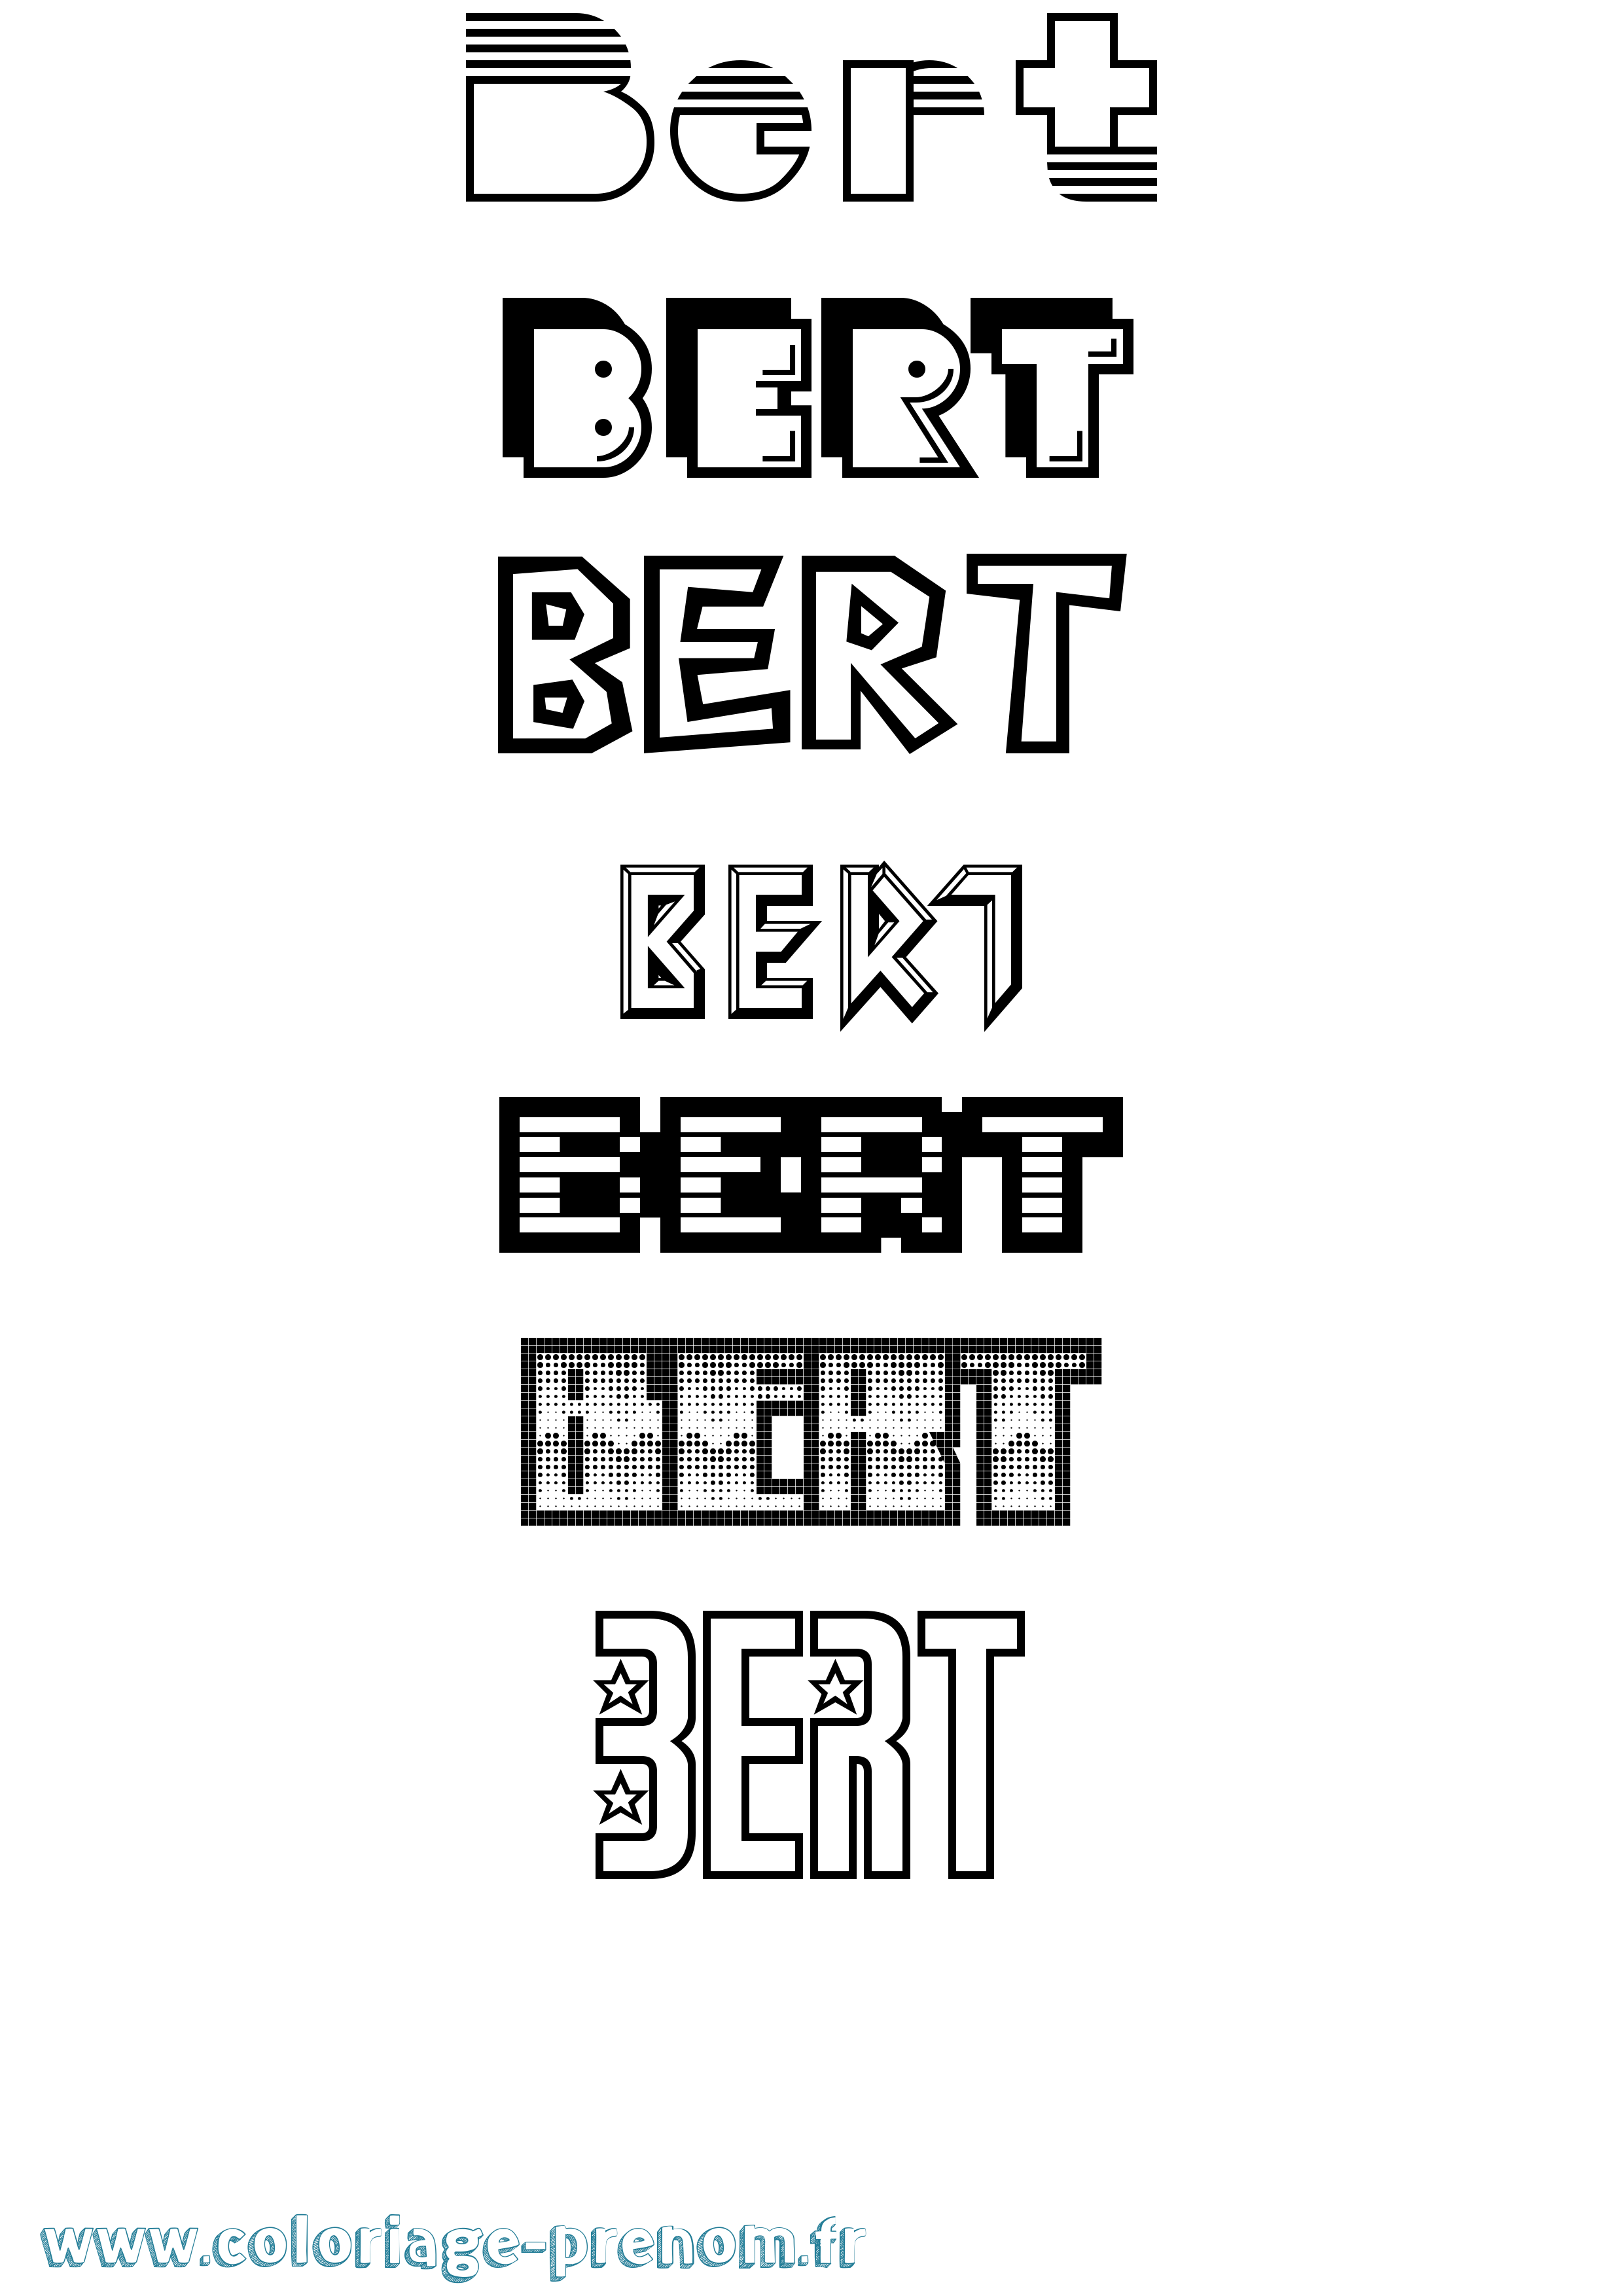 Coloriage prénom Bert Jeux Vidéos